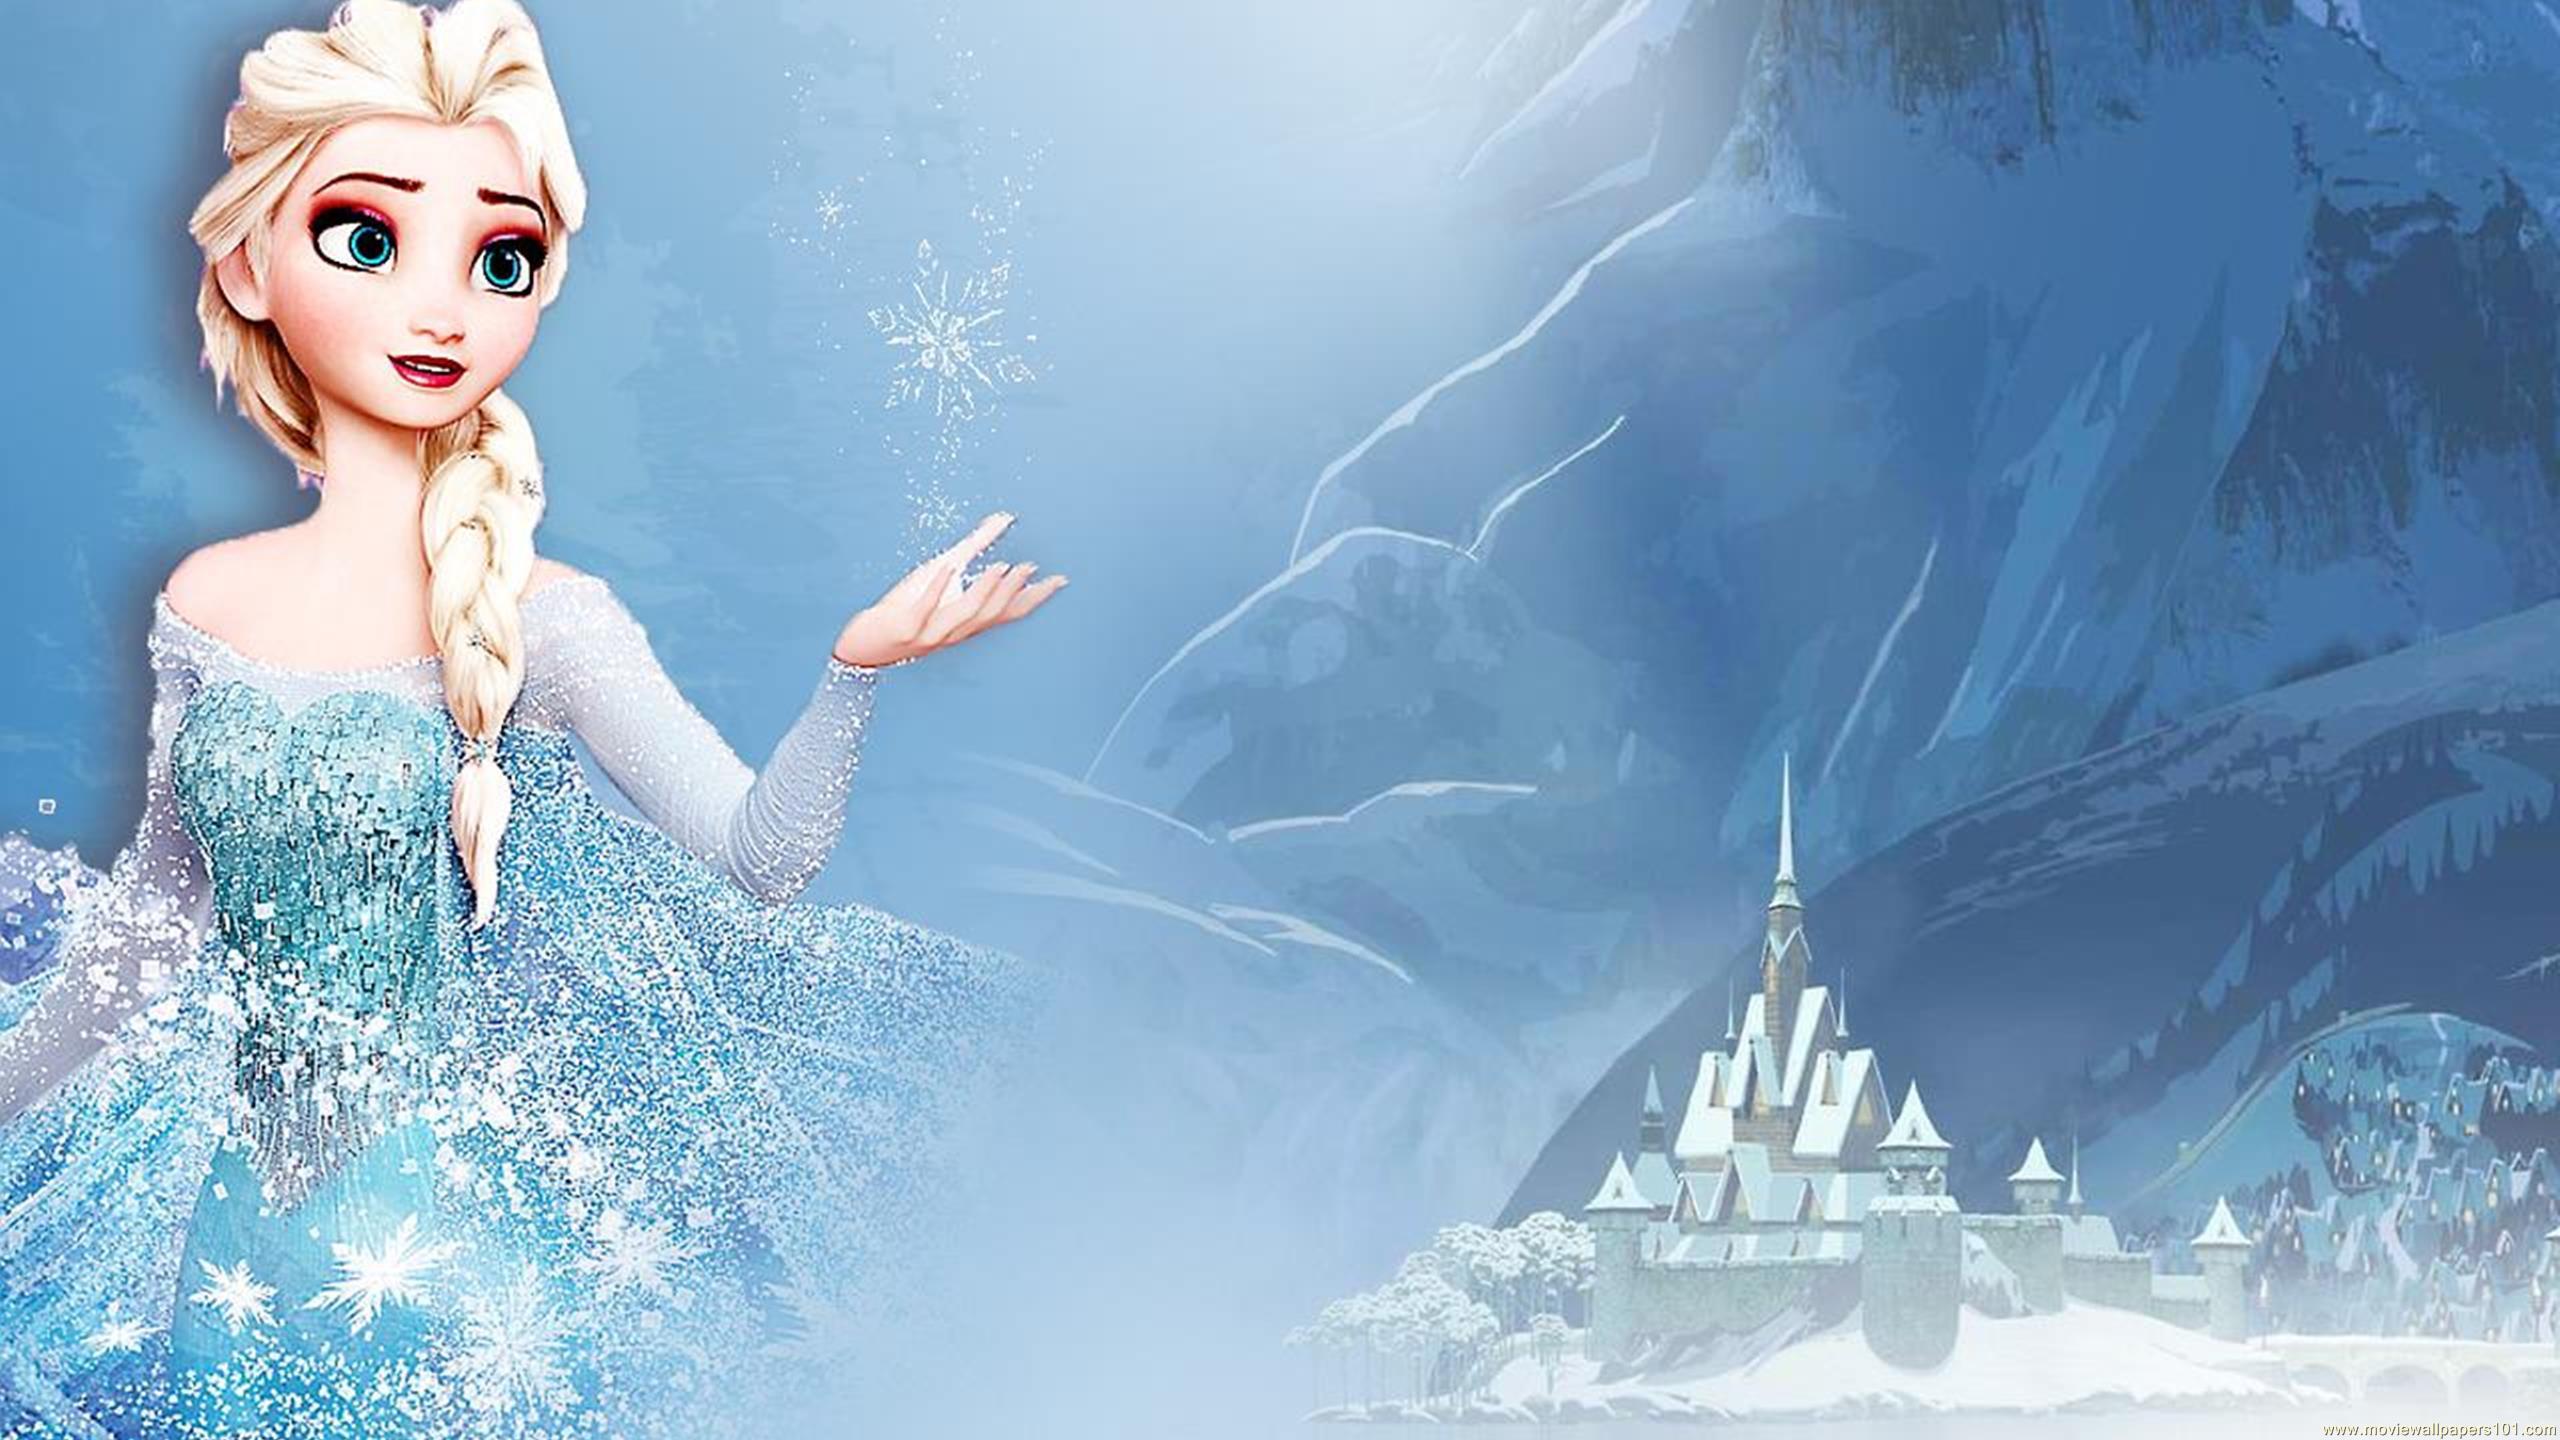 Frozen Elsa Background HD desktop wallpaper, Widescreen, High Definition